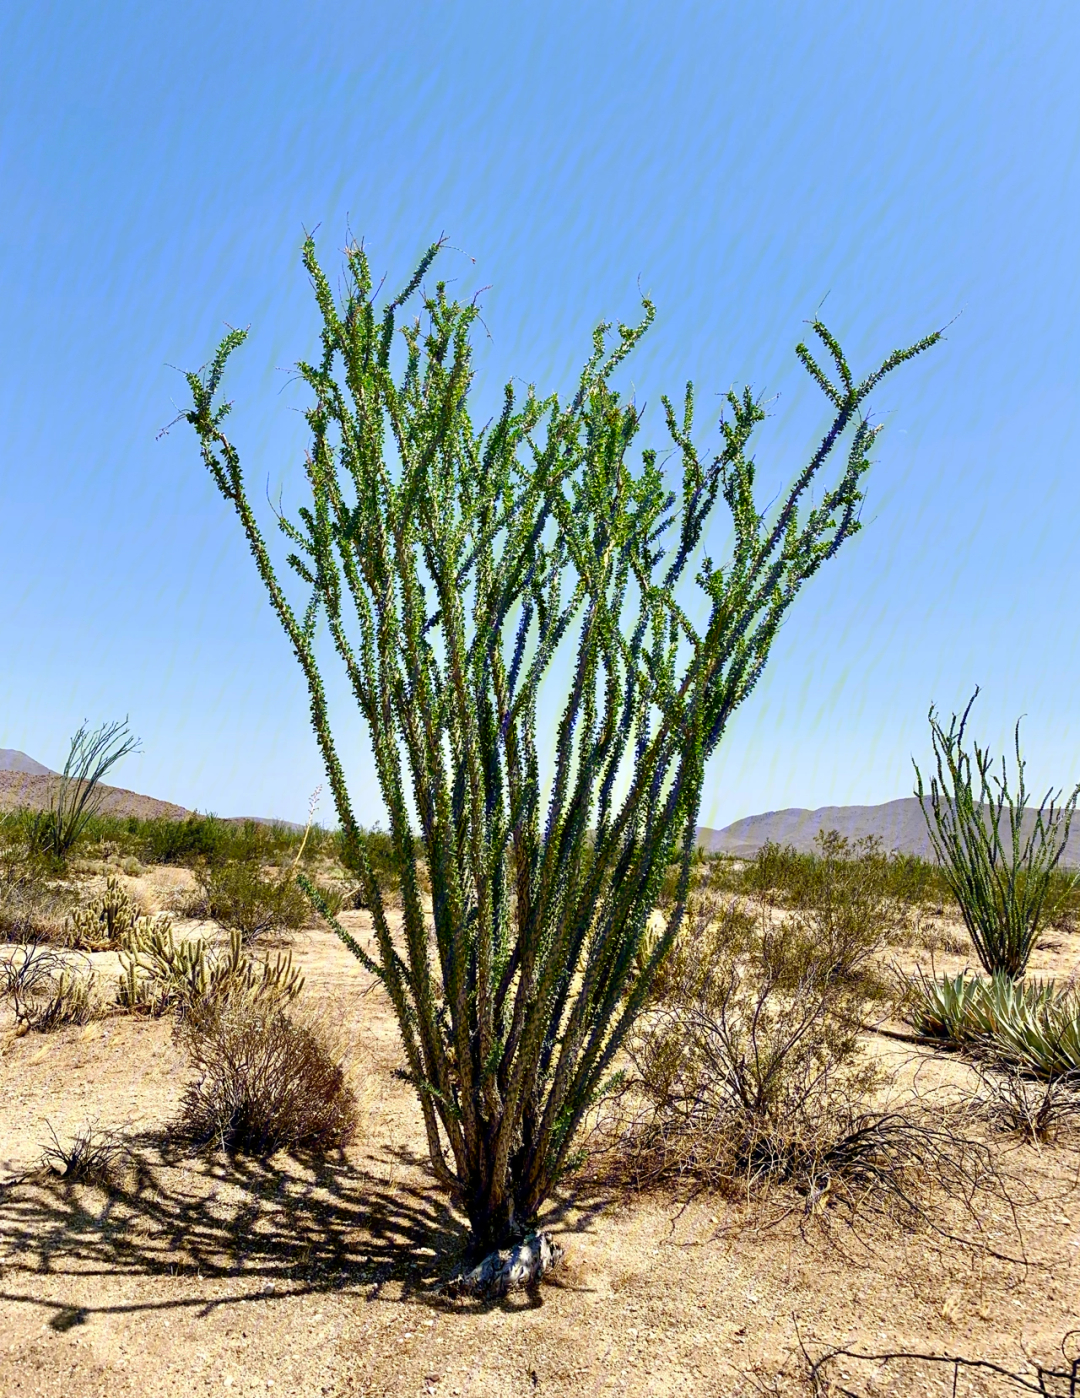 沙漠植物图片及名称图片